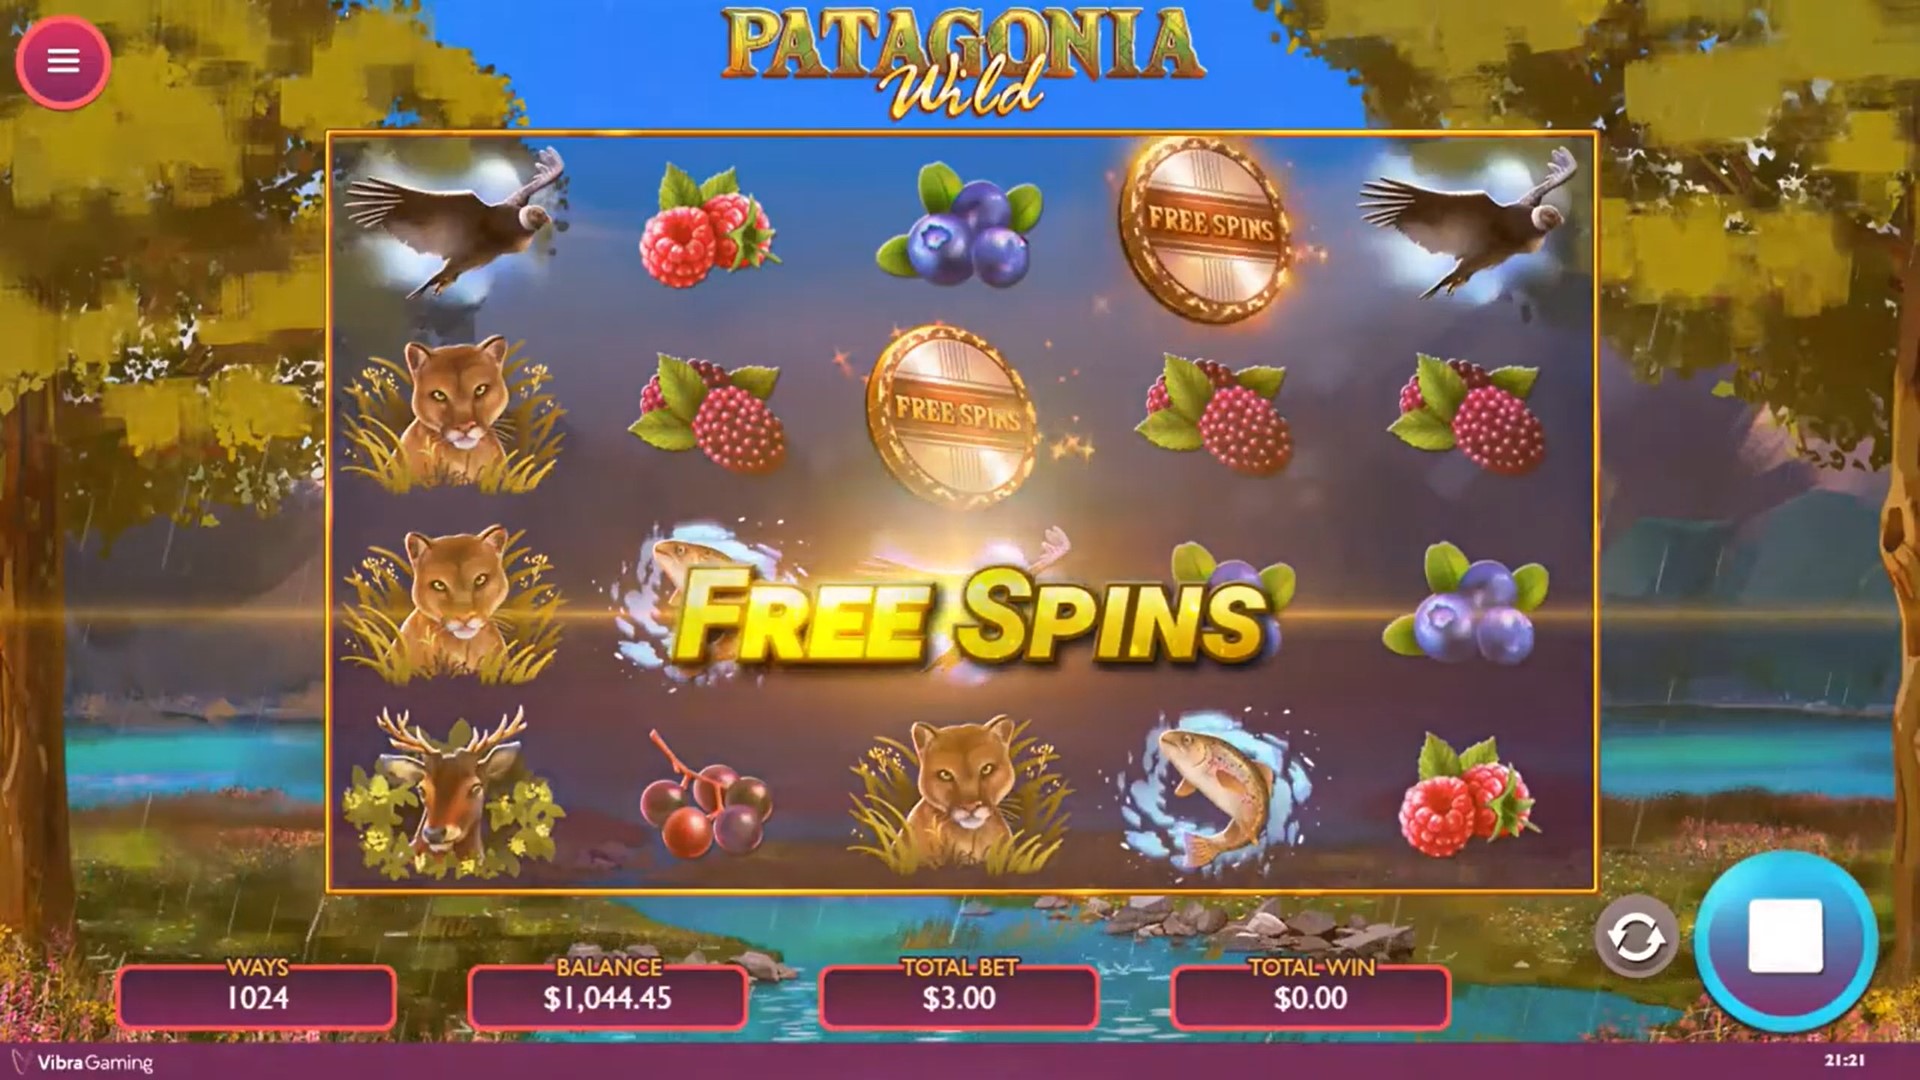 Patagonia Wild free spins Vibra Gaming